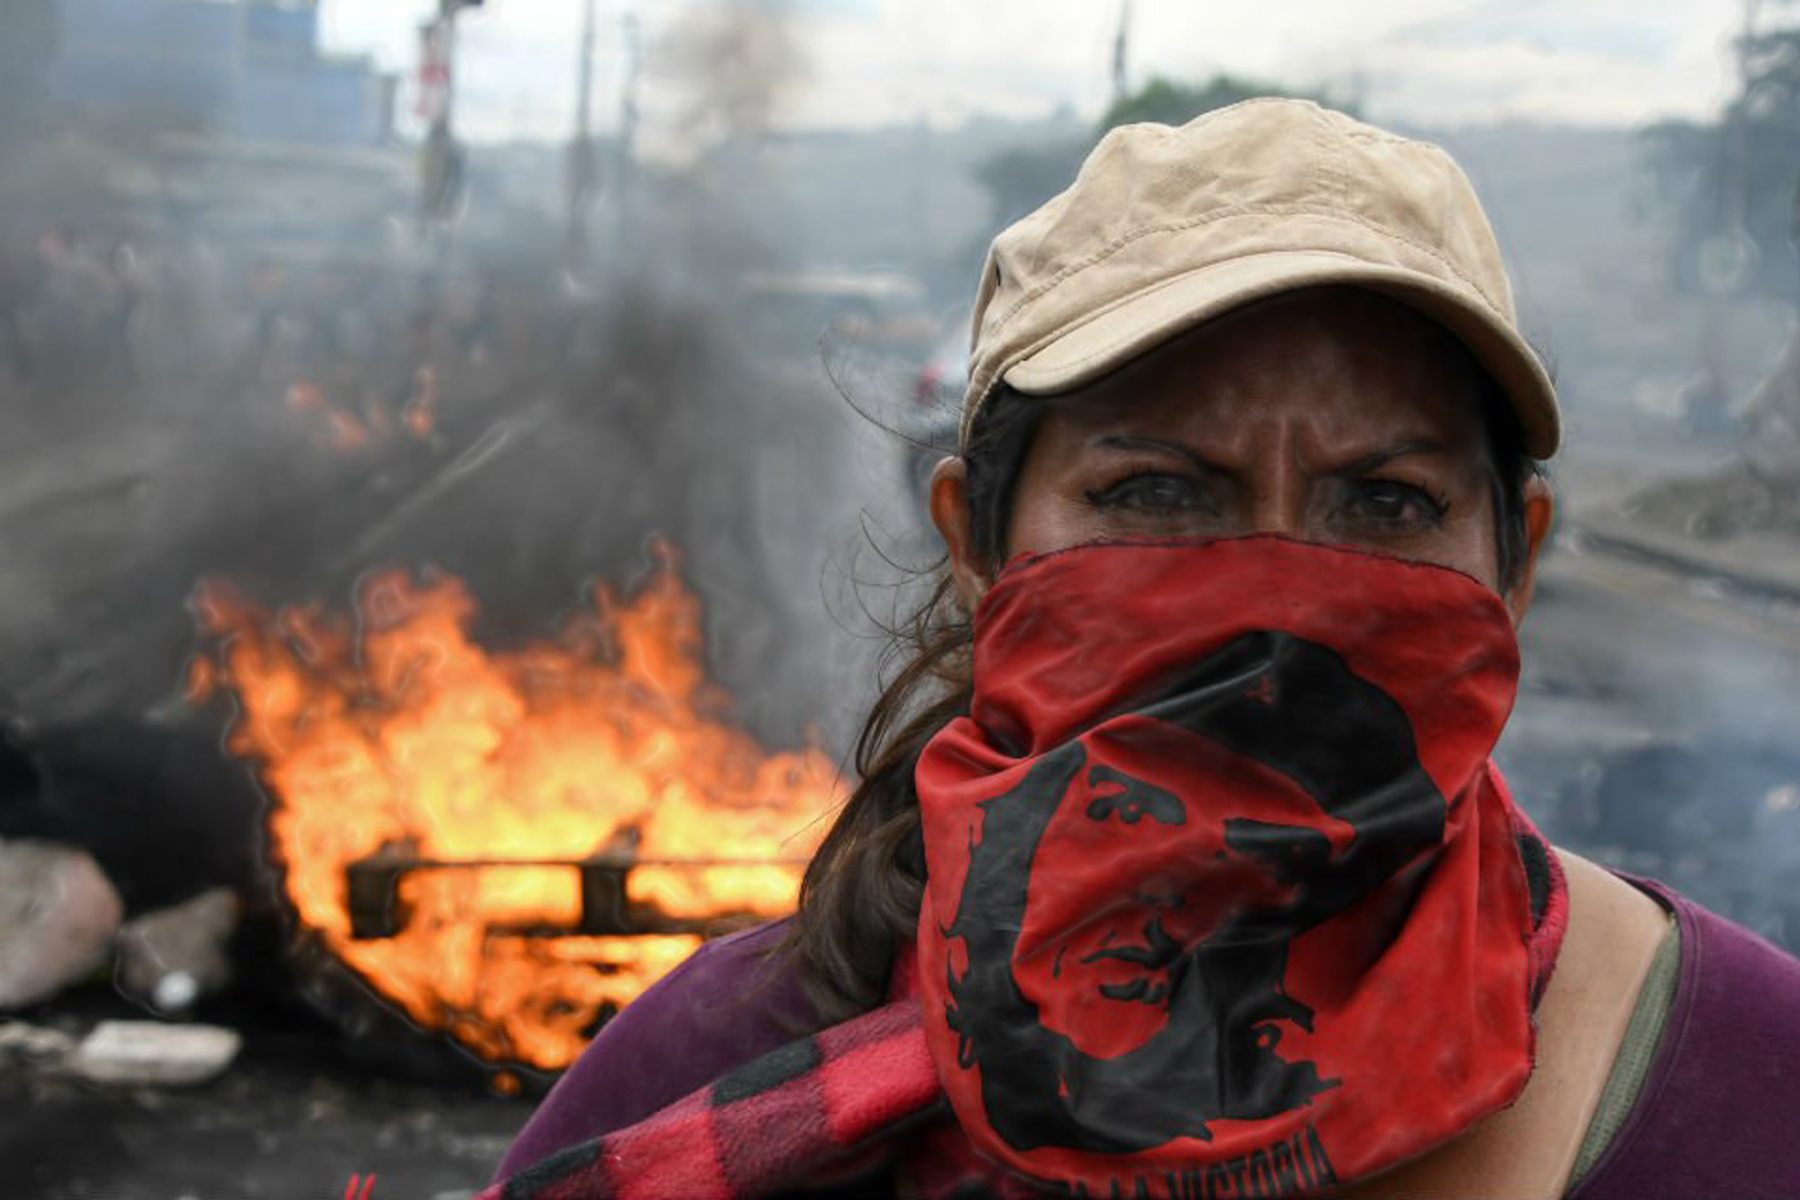 "Protestas" un duro golpe para la economía hondureña